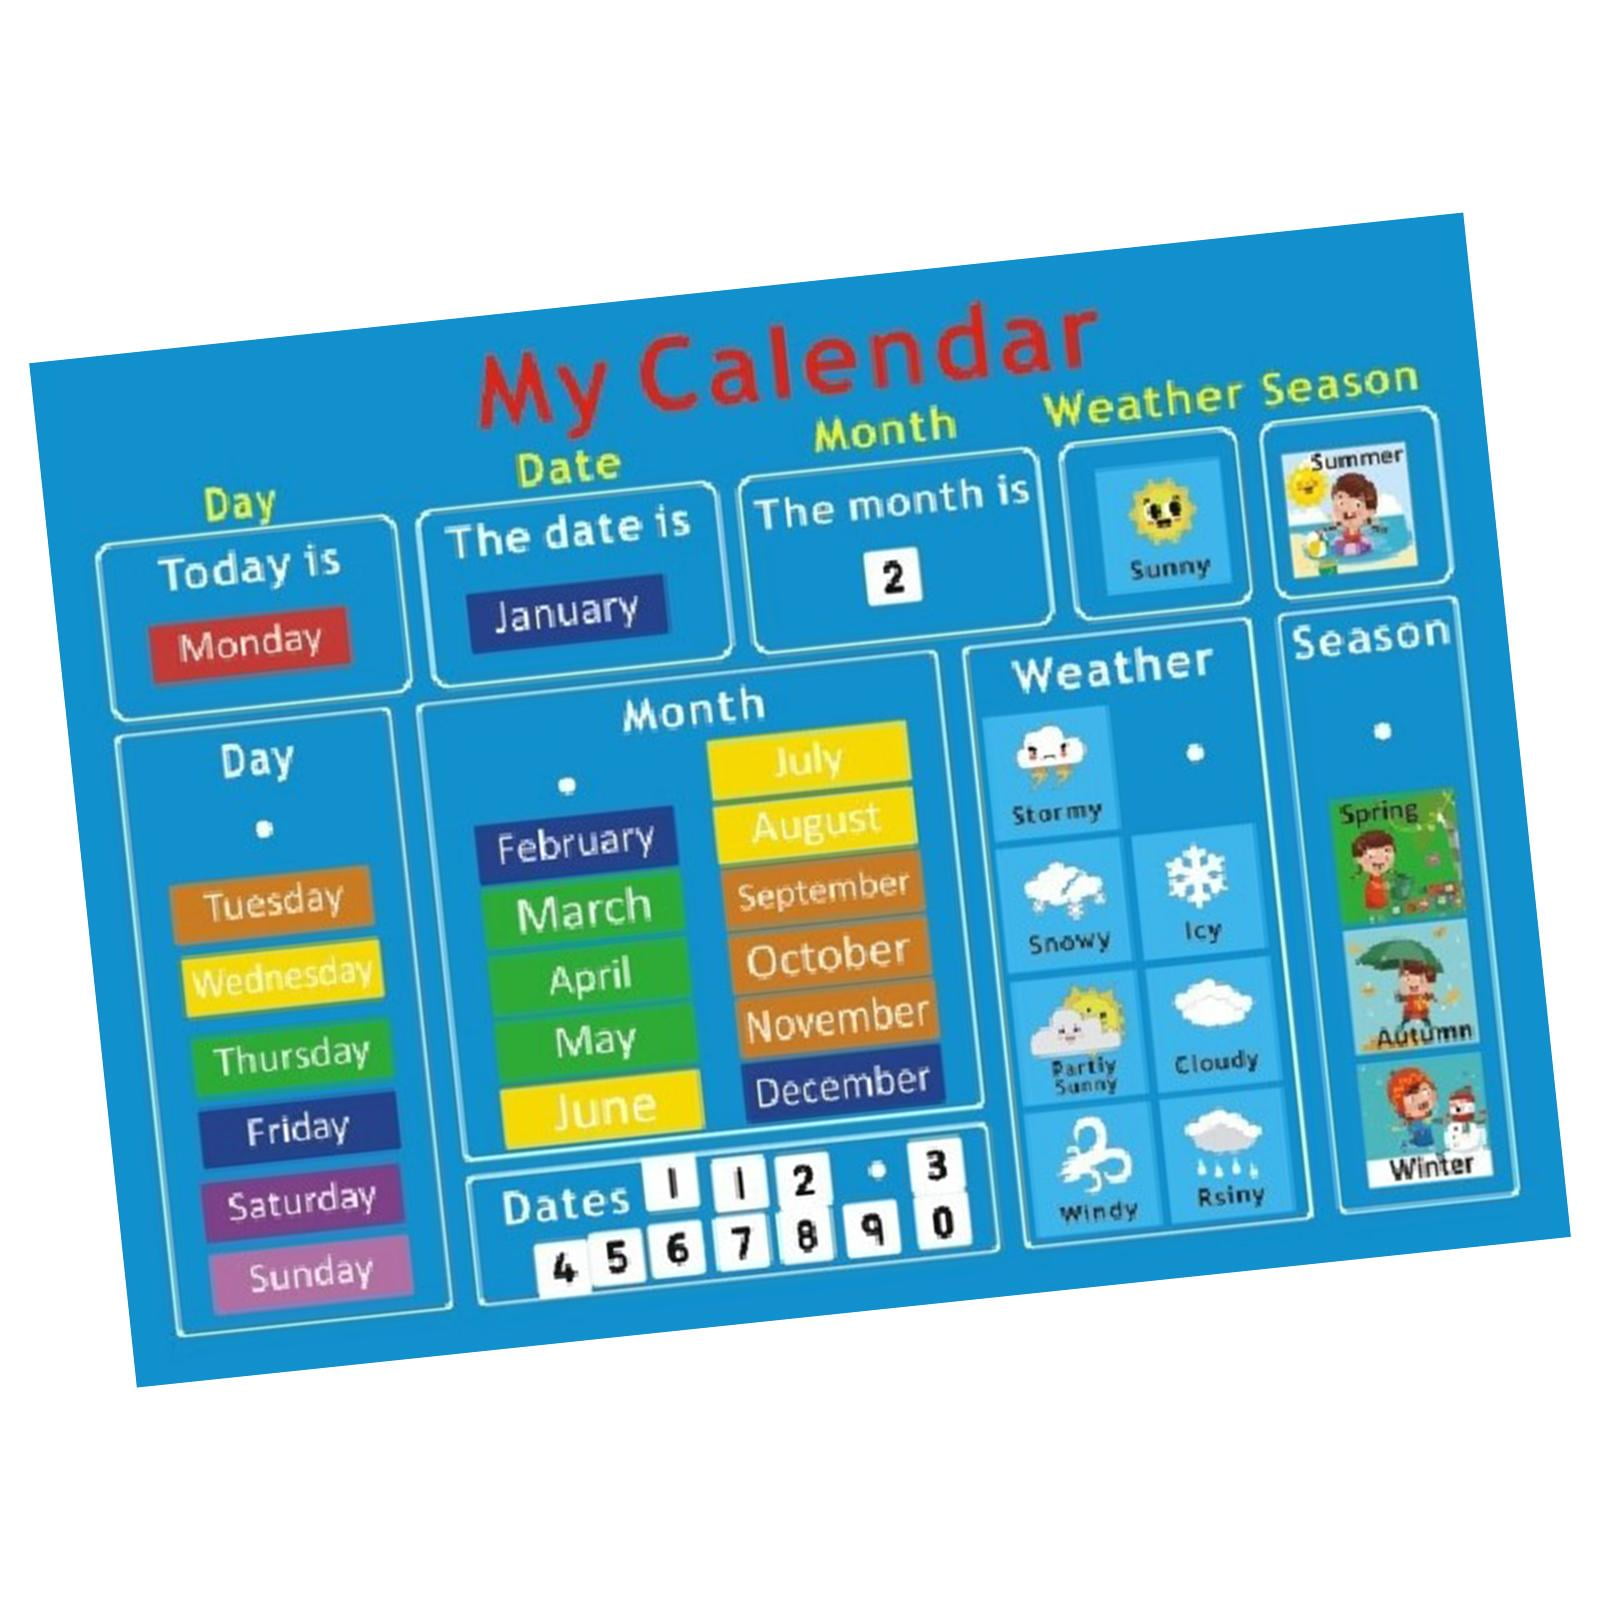 Easiest Felt Board to Make for Preschool Activities » Preschool Toolkit